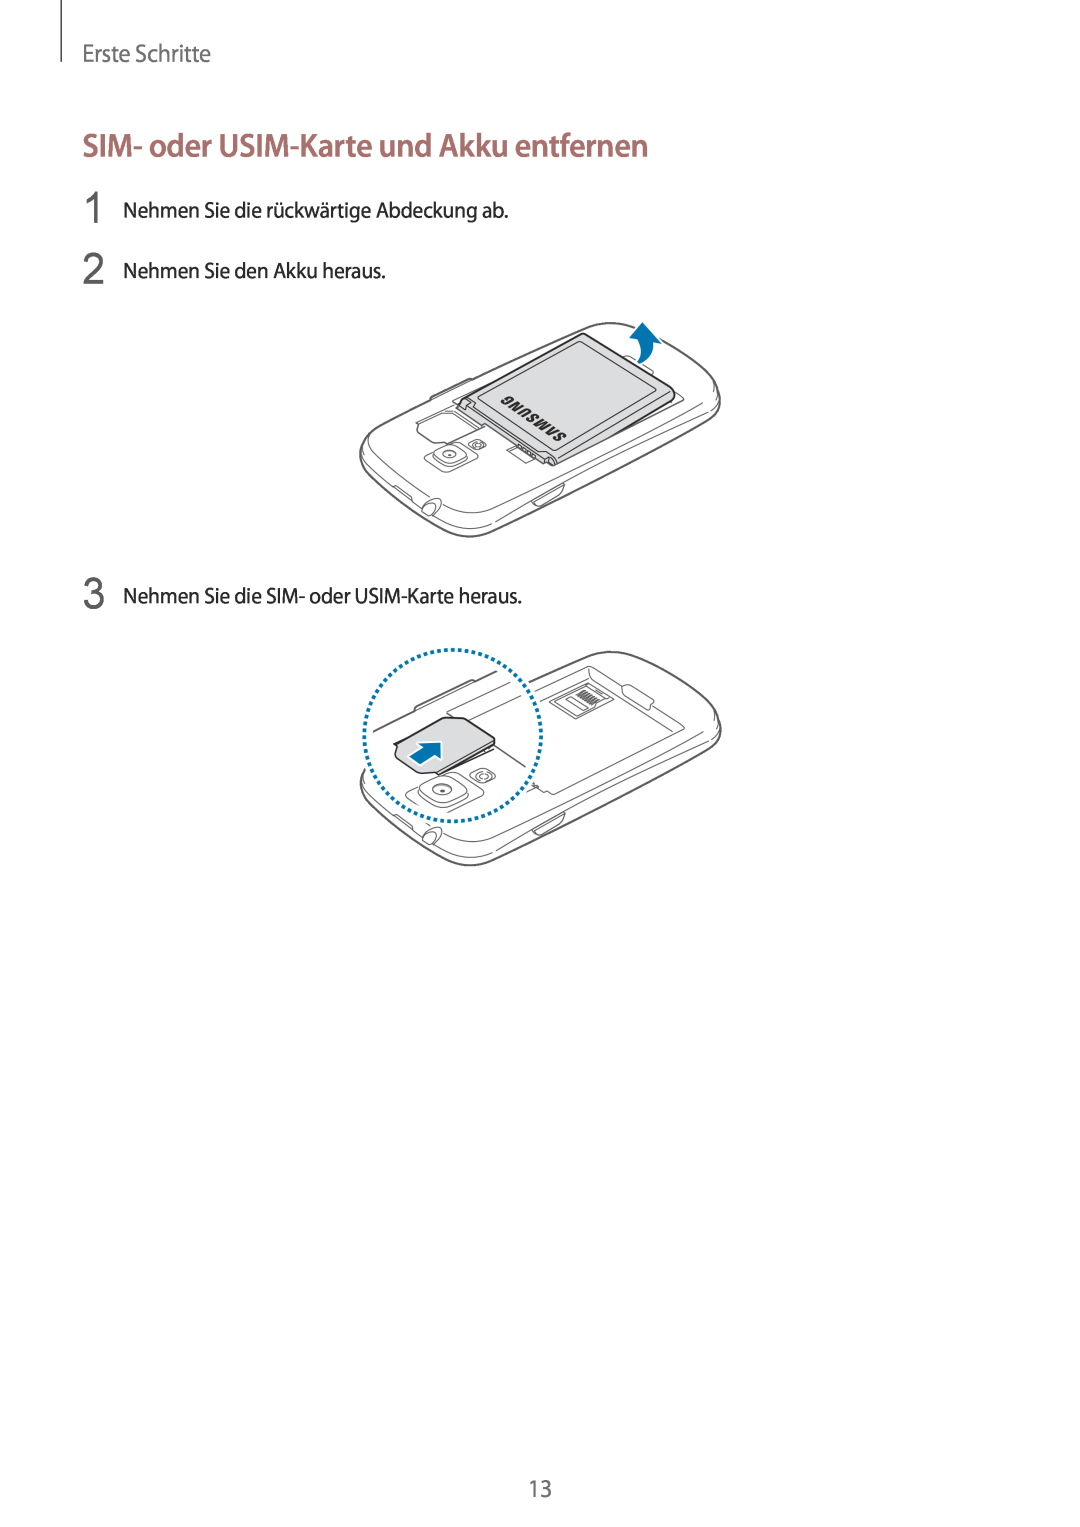 Samsung GT-I8190MBNDTM SIM- oder USIM-Karte und Akku entfernen, Erste Schritte, Nehmen Sie die SIM- oder USIM-Karte heraus 